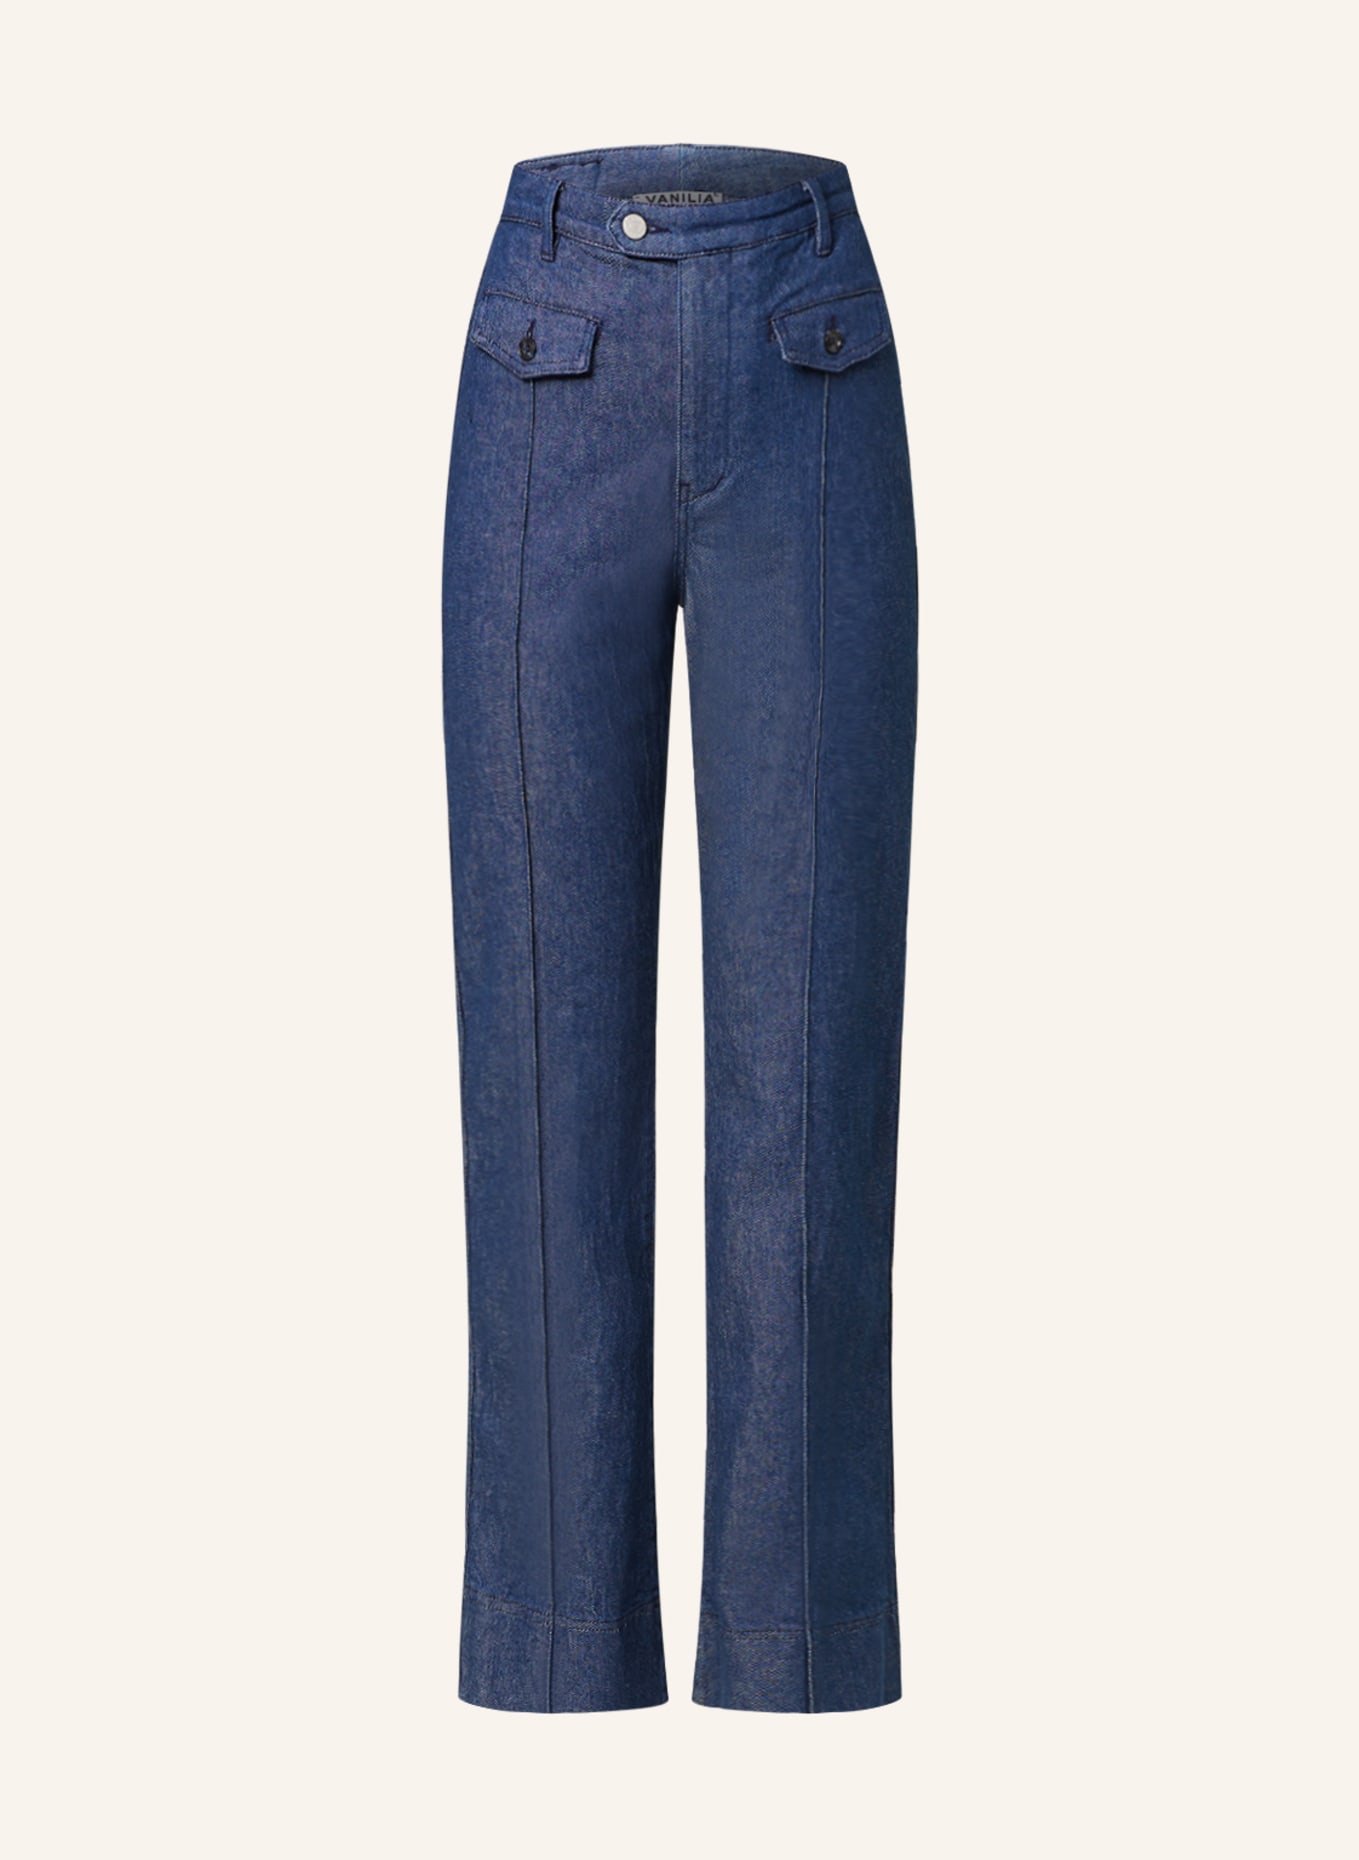 VANILIA Bootcut jeans, Color: 882 Jeans (Image 1)